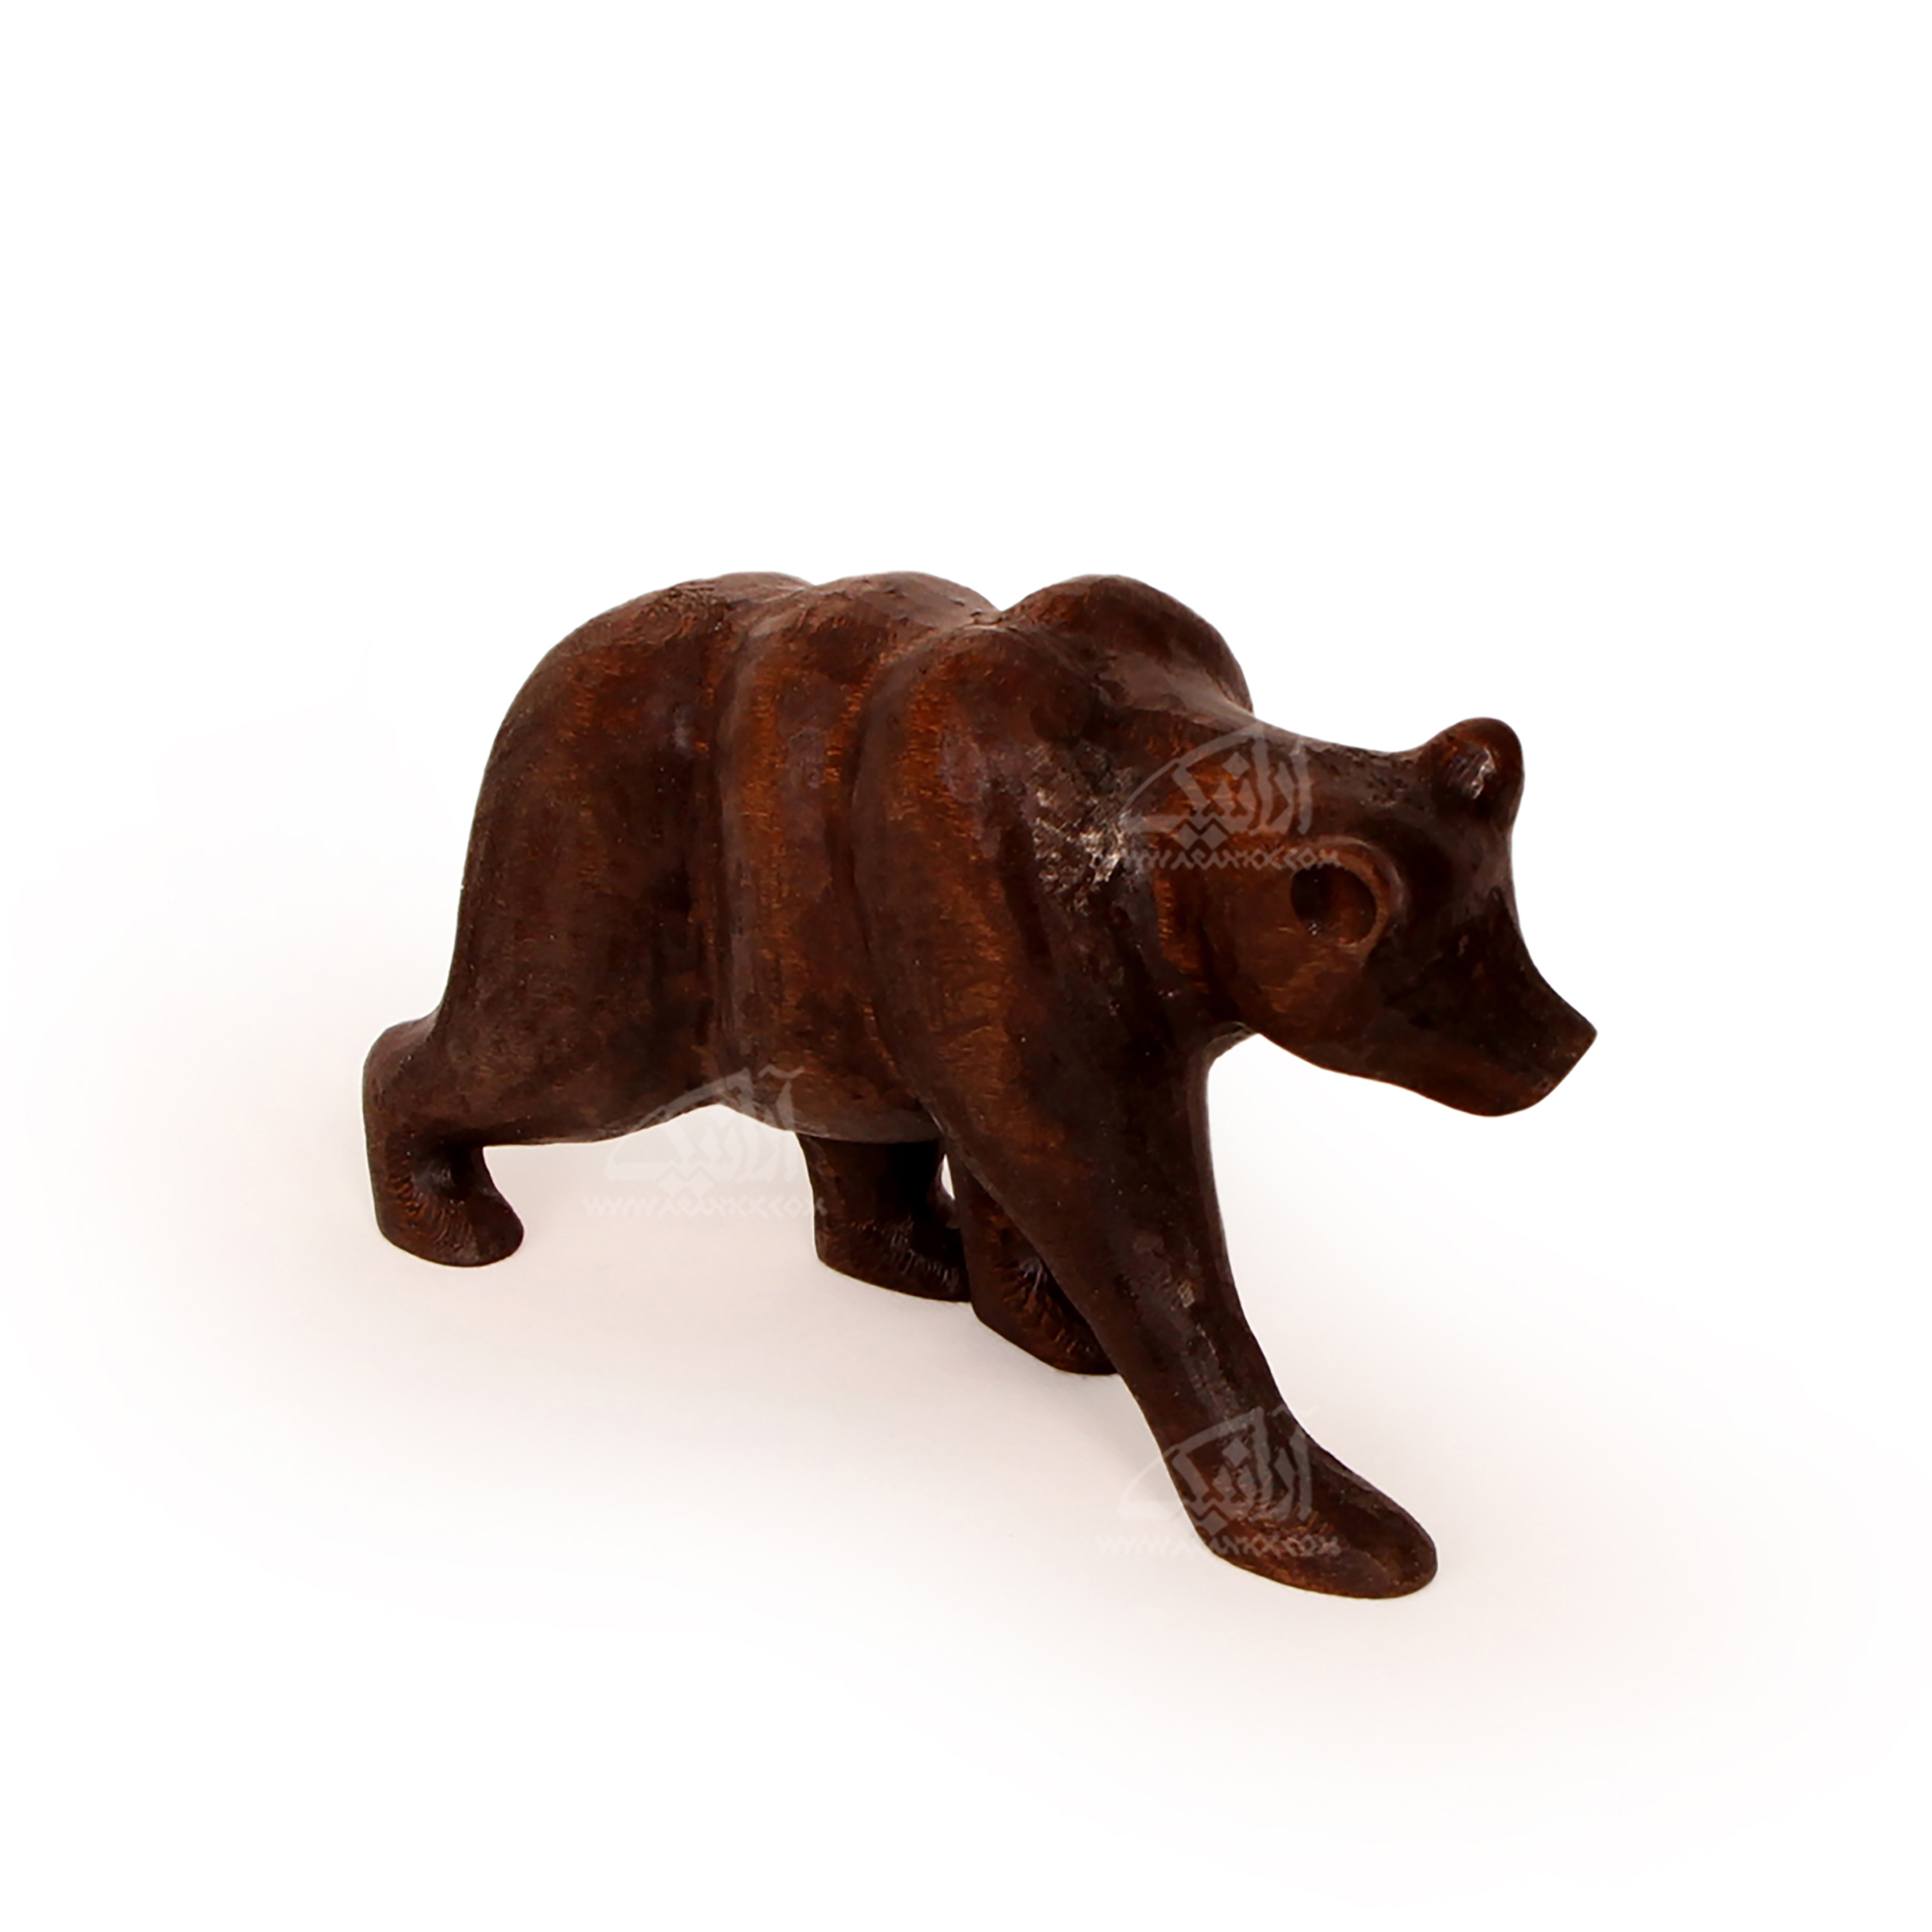 ‎مجسمه‎ ‎خرس چوبی‎ ‎‎‎‎ساده‎ ‎‎ رنگ ‎قهوه ای‎ مدل 1105900023